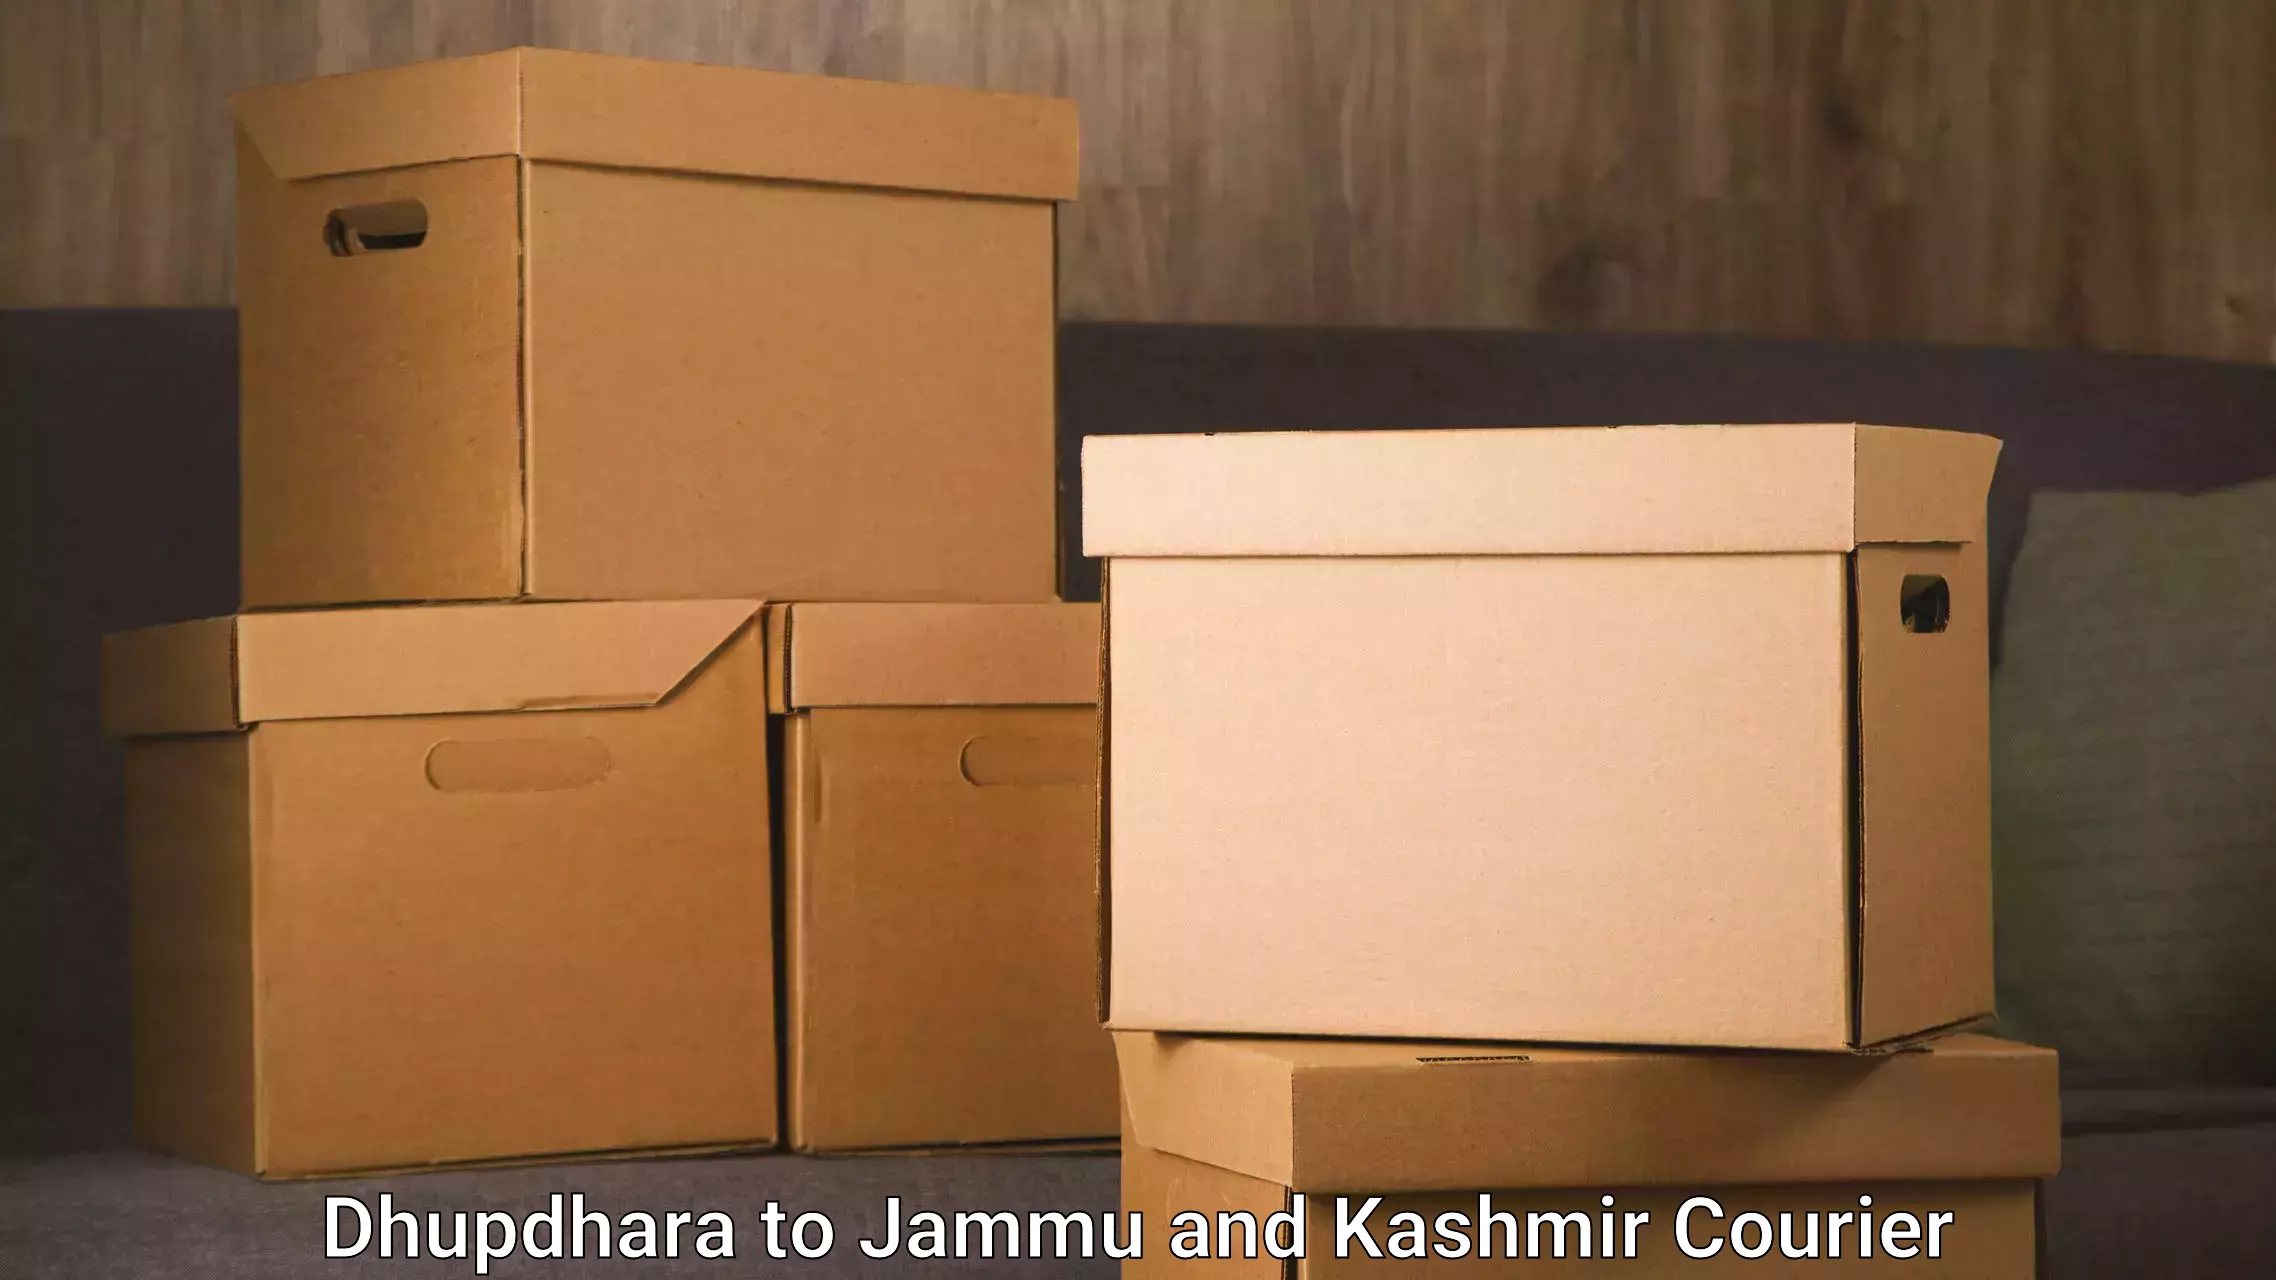 Urban courier service Dhupdhara to Srinagar Kashmir